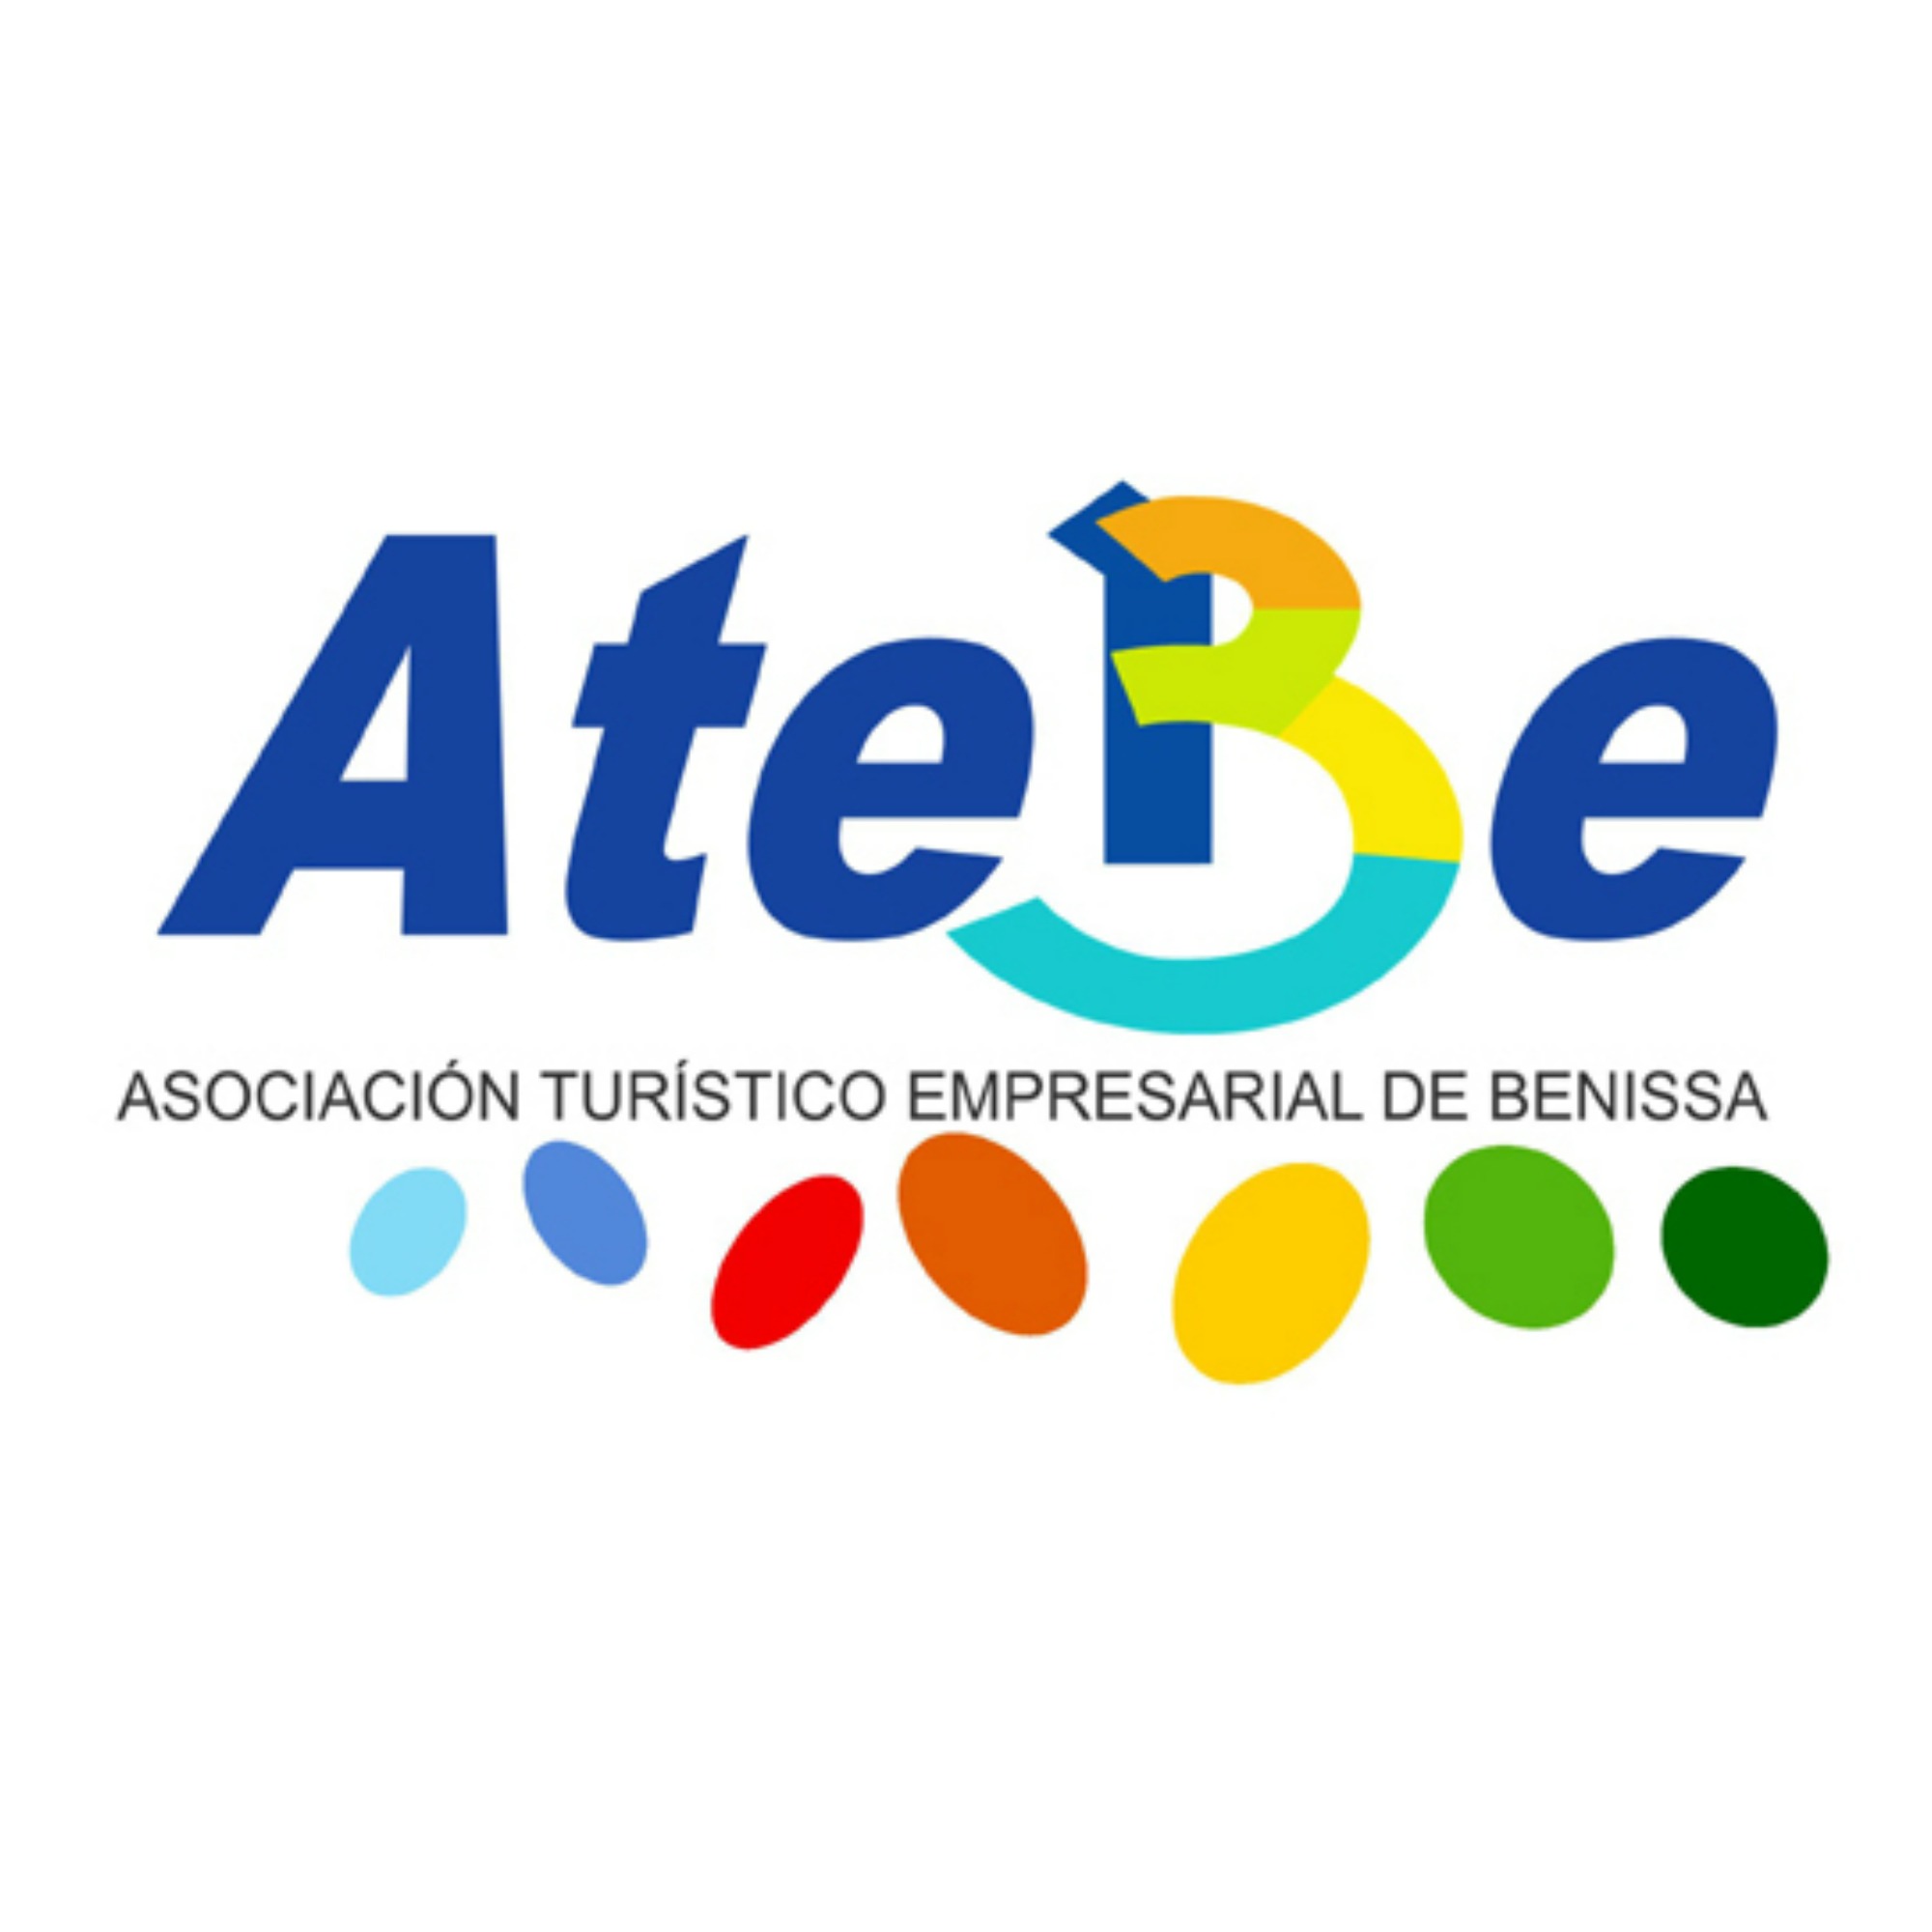 ATEBE (Asociación Turístico Empresarial de Benissa)